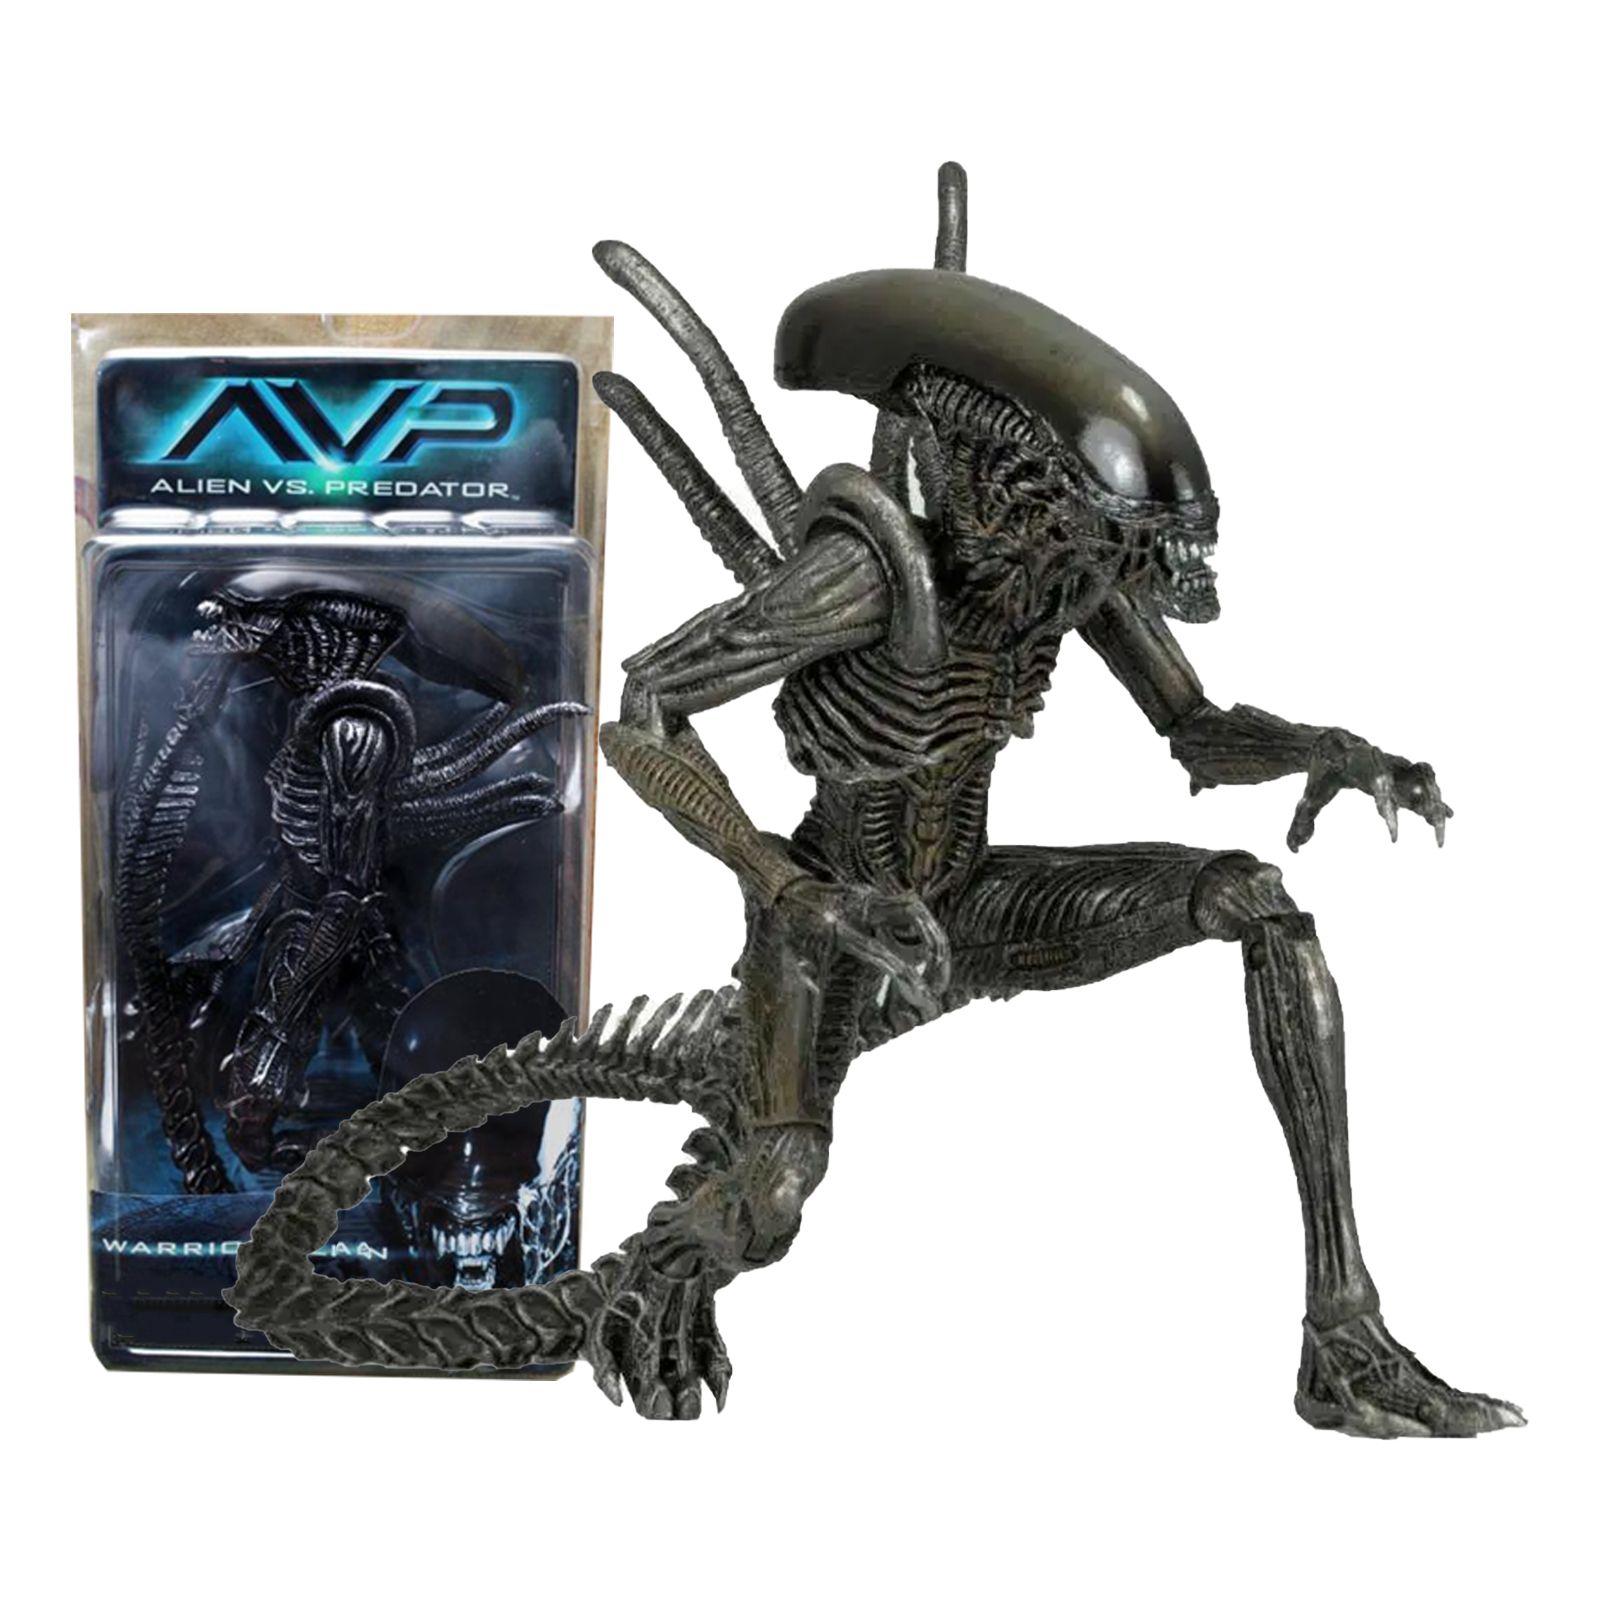 Alien vs predator collection steam фото 50